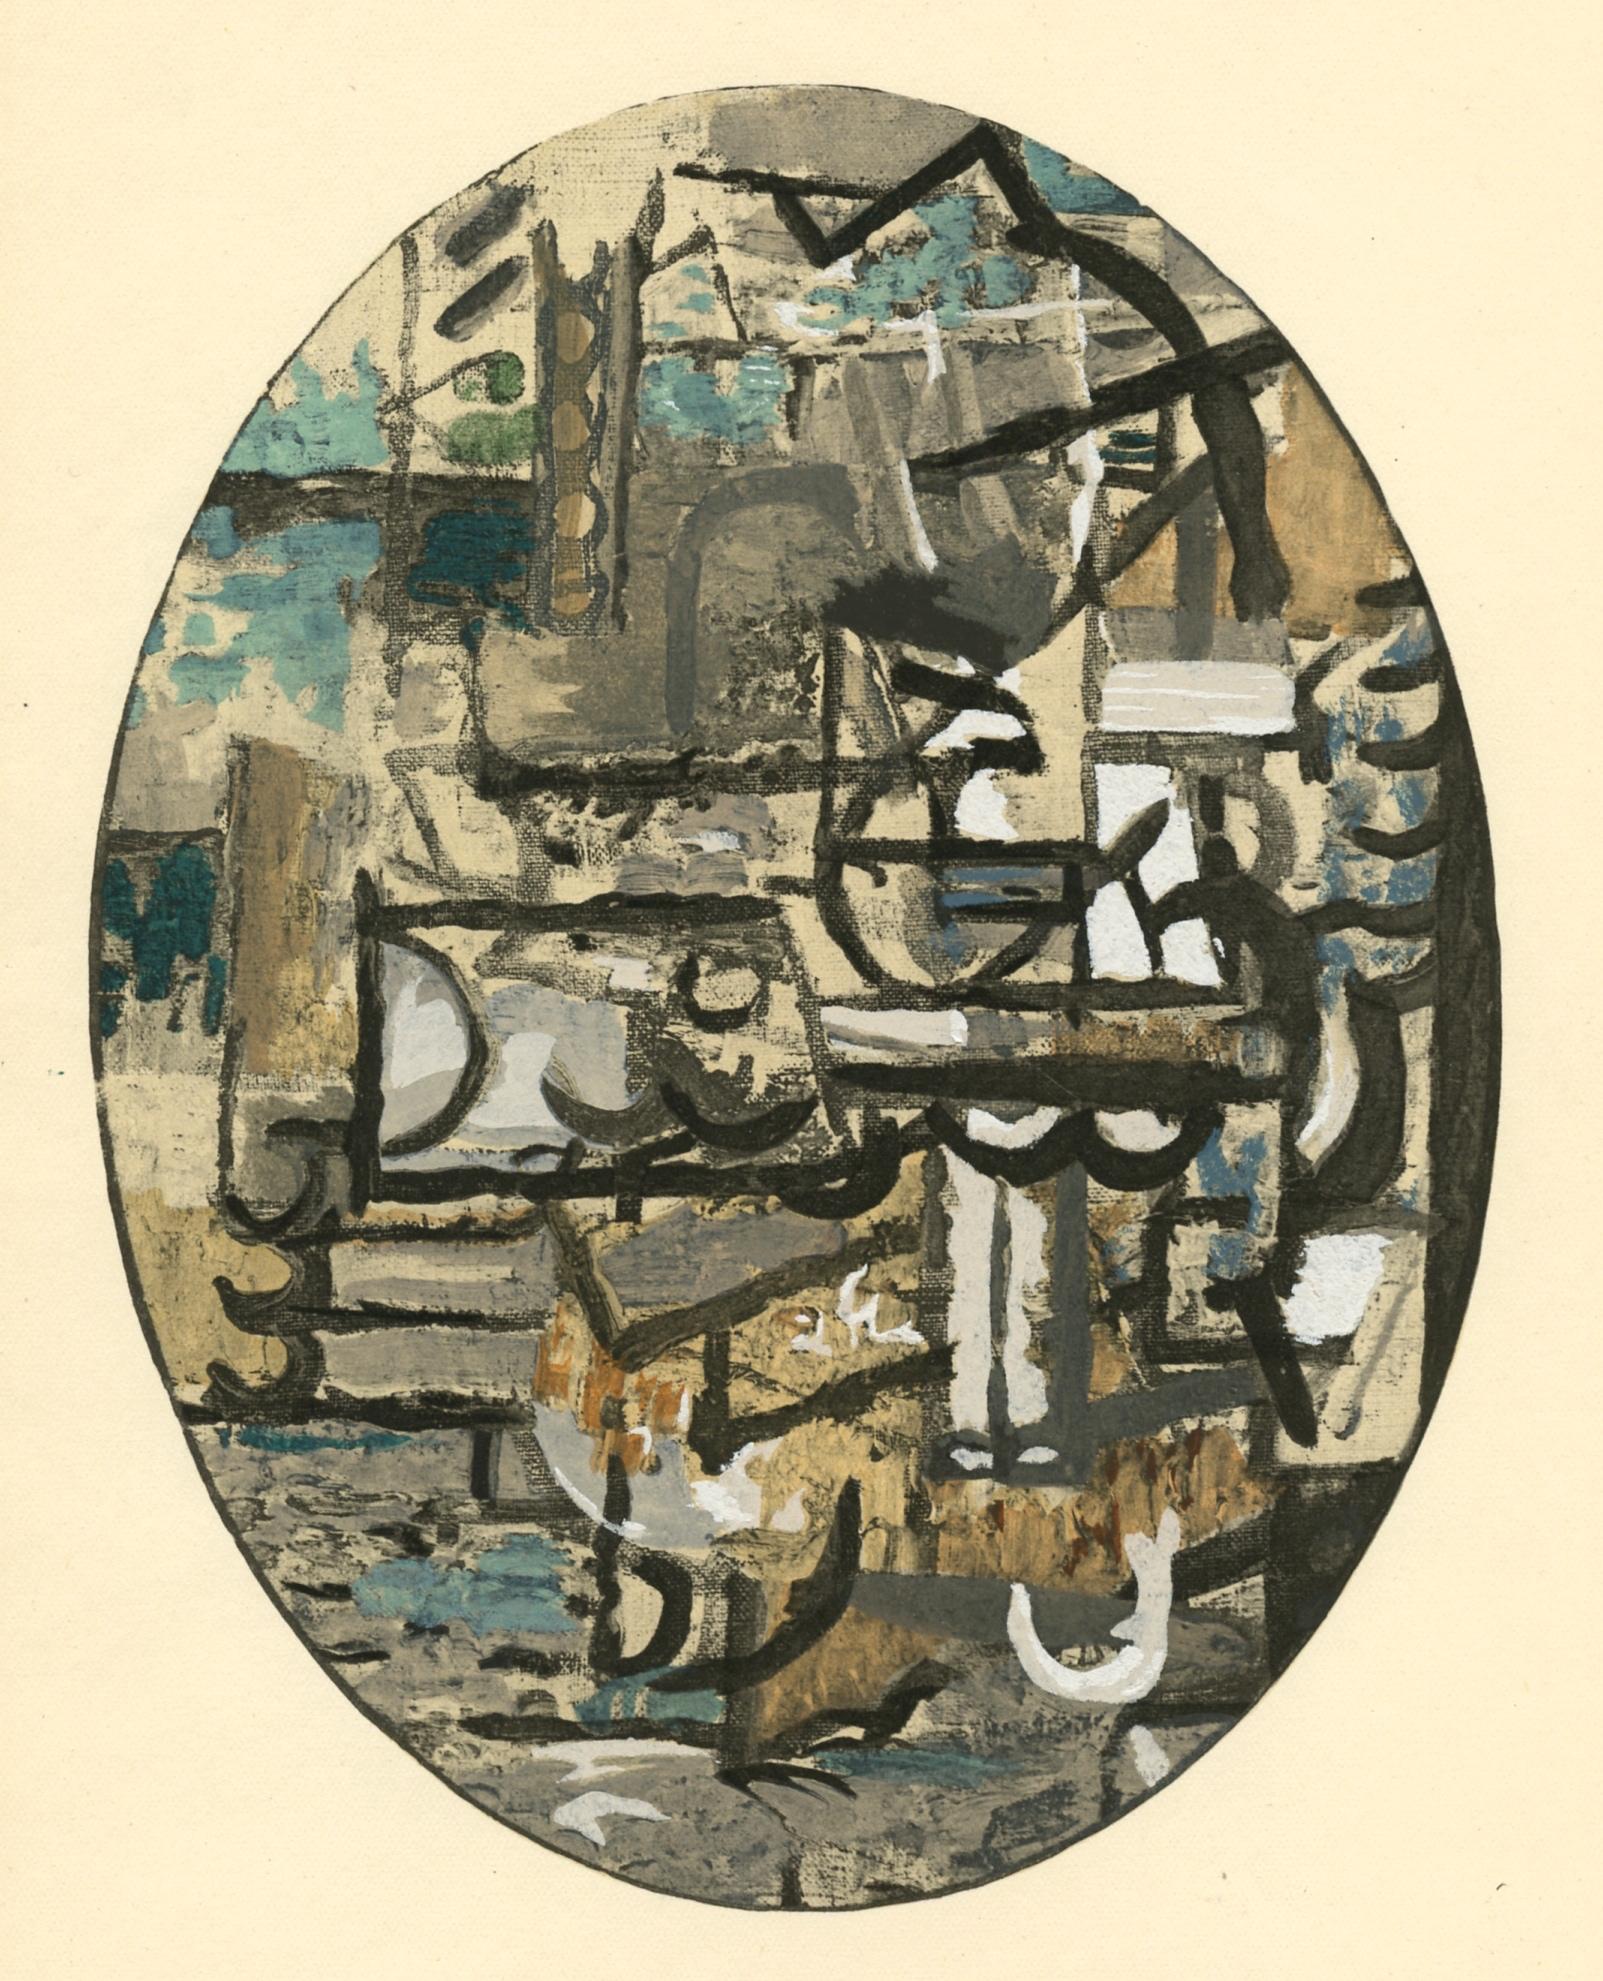 pochoir - Print de (after) Georges Braque